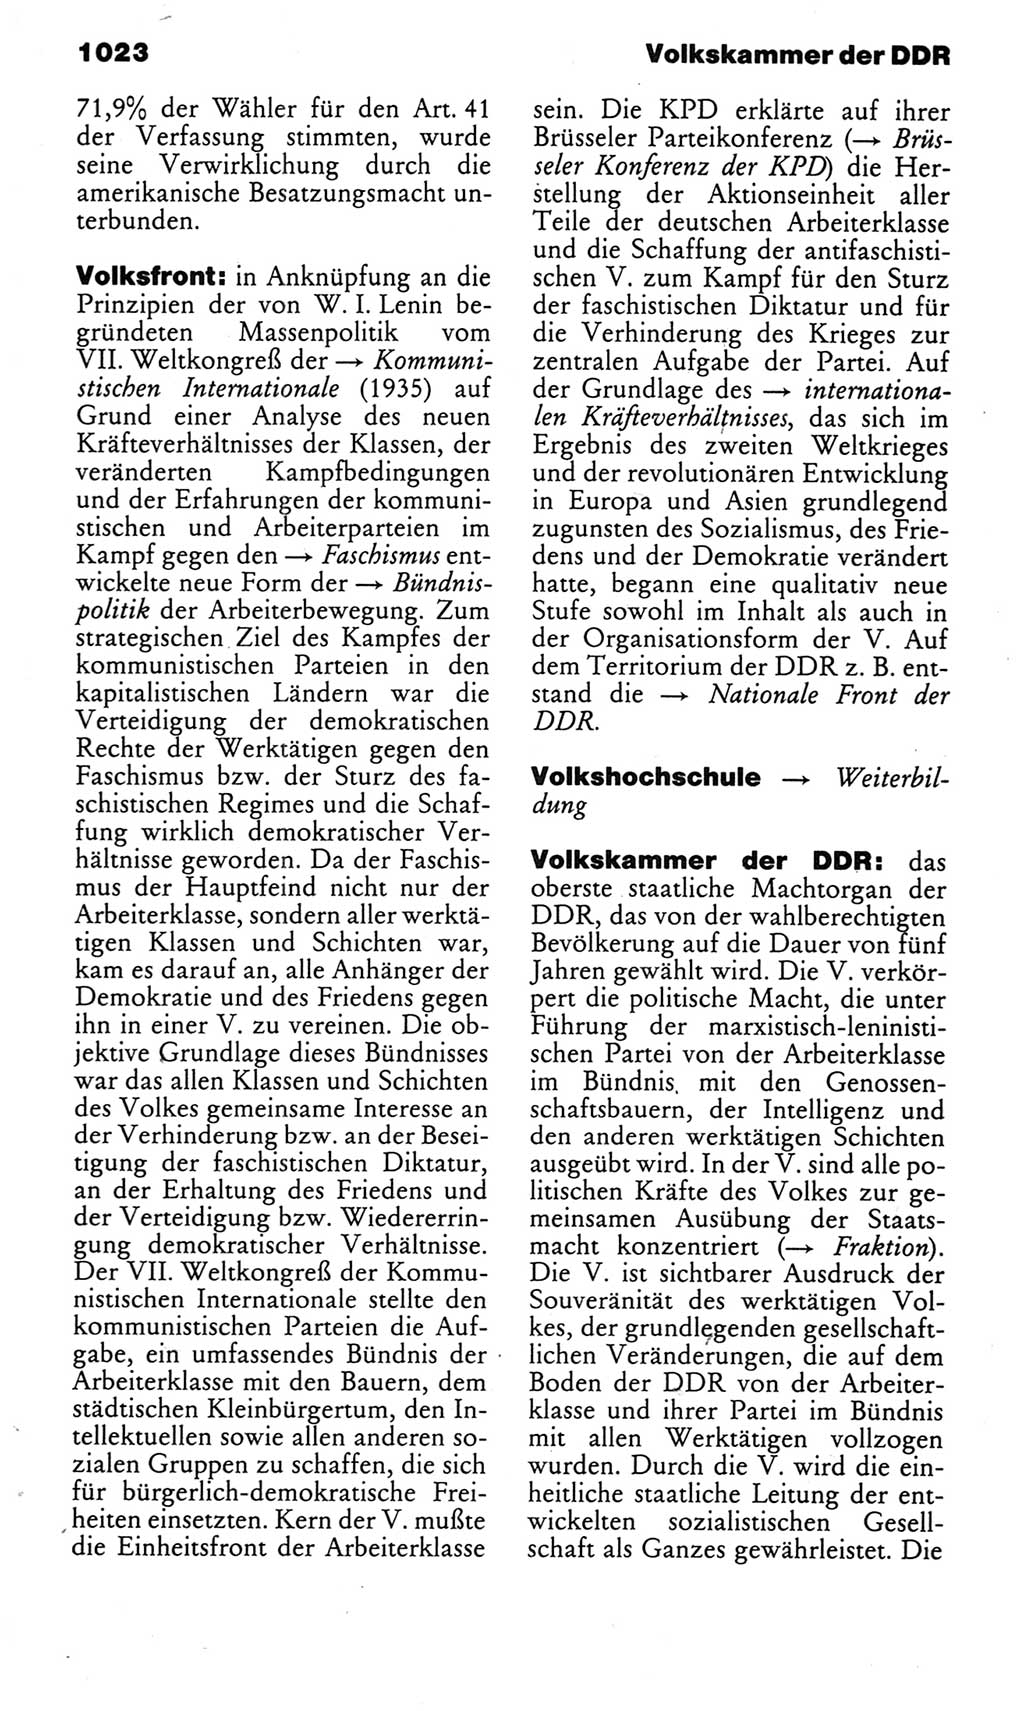 Kleines politisches Wörterbuch [Deutsche Demokratische Republik (DDR)] 1983, Seite 1023 (Kl. pol. Wb. DDR 1983, S. 1023)